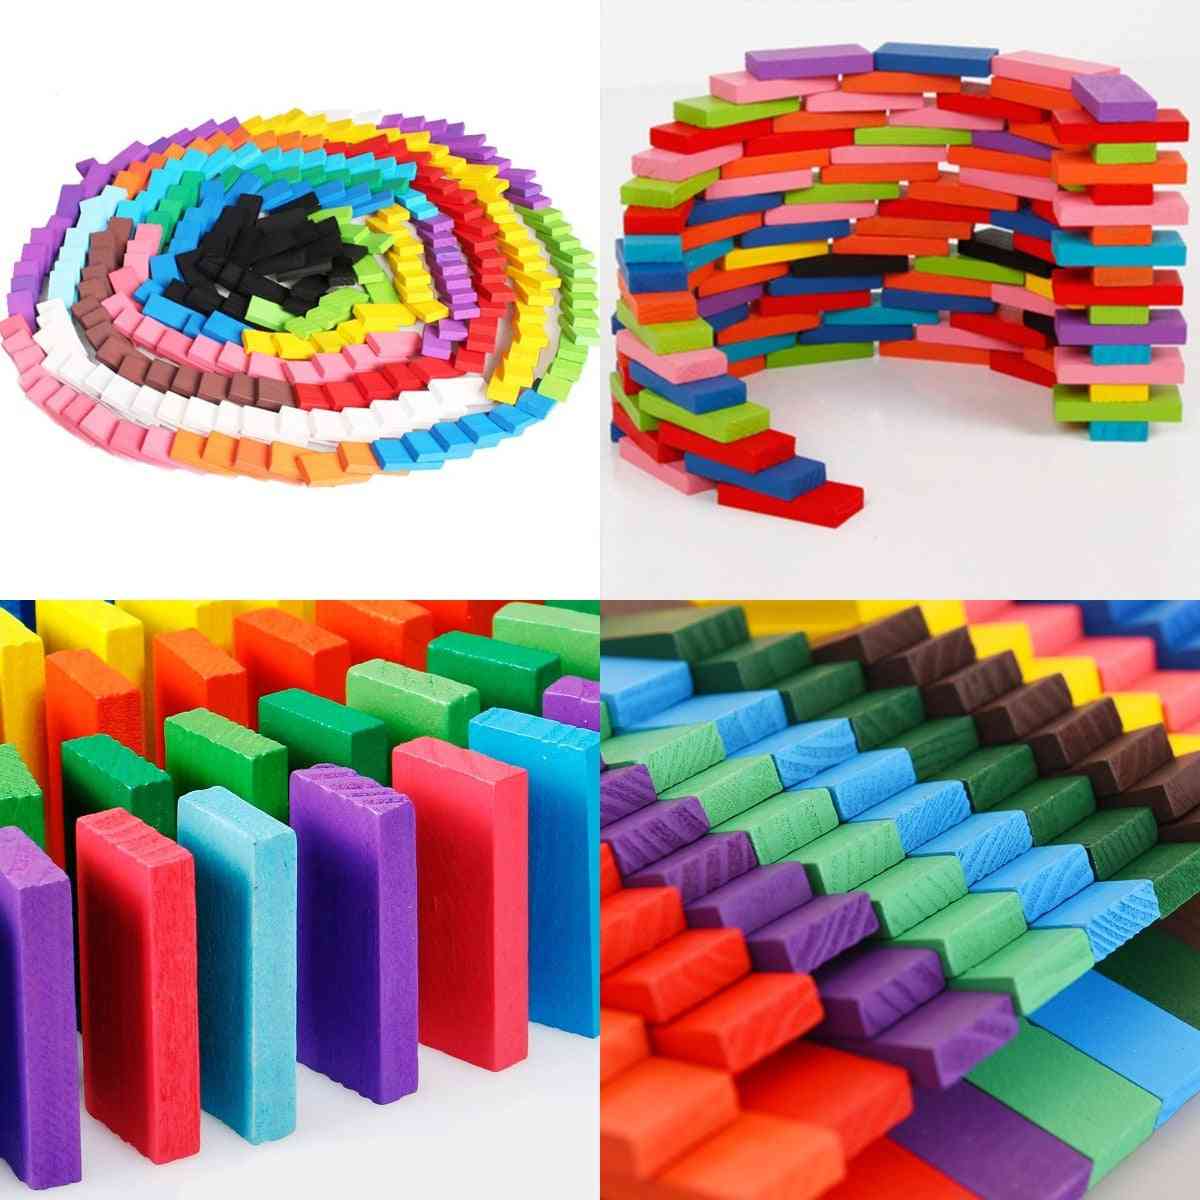 120st / set regnbågsved domino block sticksågleksaker för barn-pedagogiska leksaker - 1 st dominohjälpare